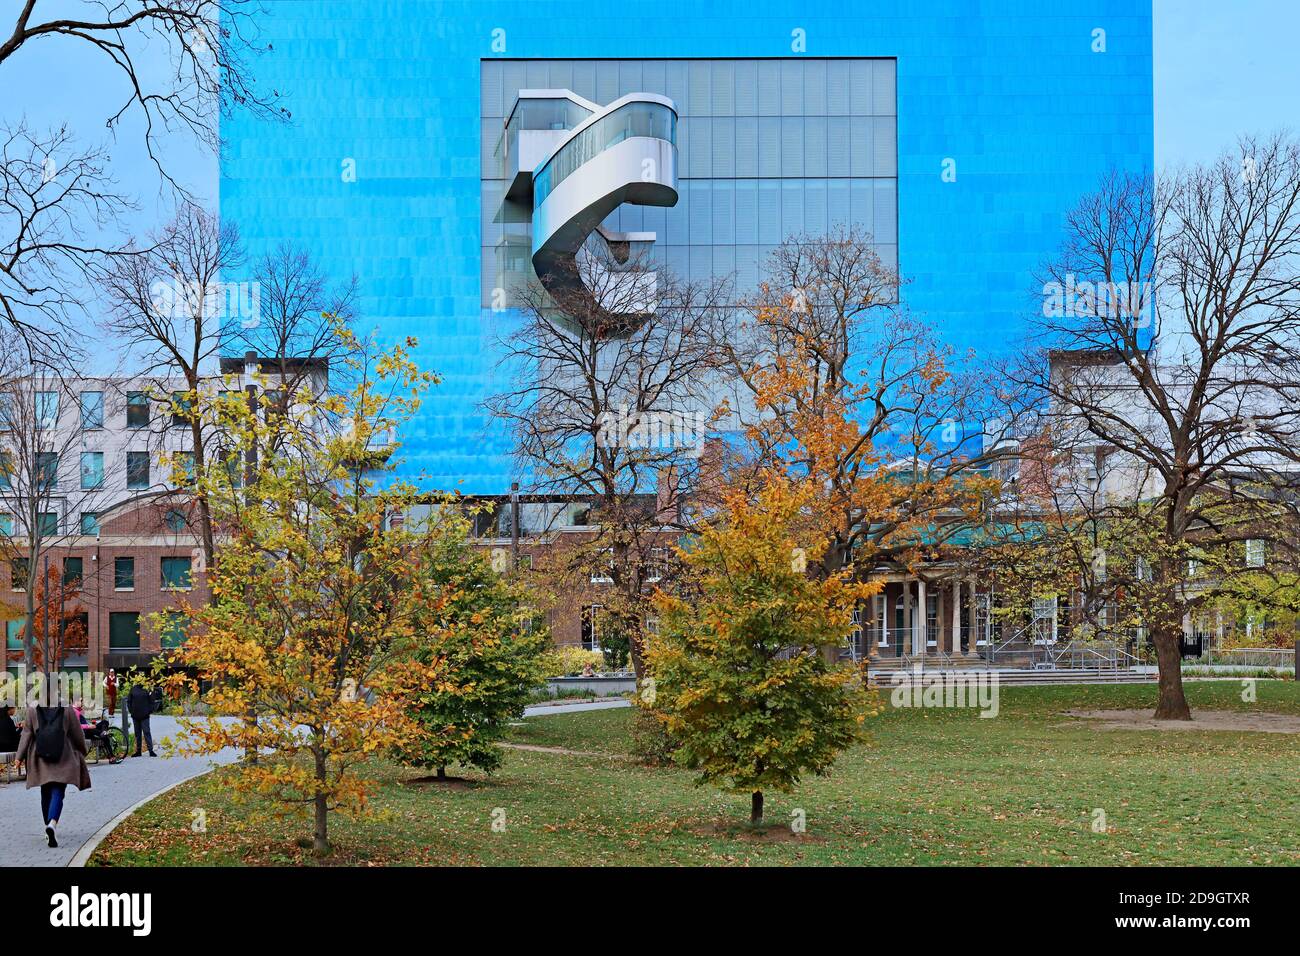 Toronto, Kanada - 5. November 2020: Die Rückansicht der Art Gallery of Ontario vom Grange Park, mit einem blauen Zusatz, der vom Architekten Frank Ge entworfen wurde Stockfoto